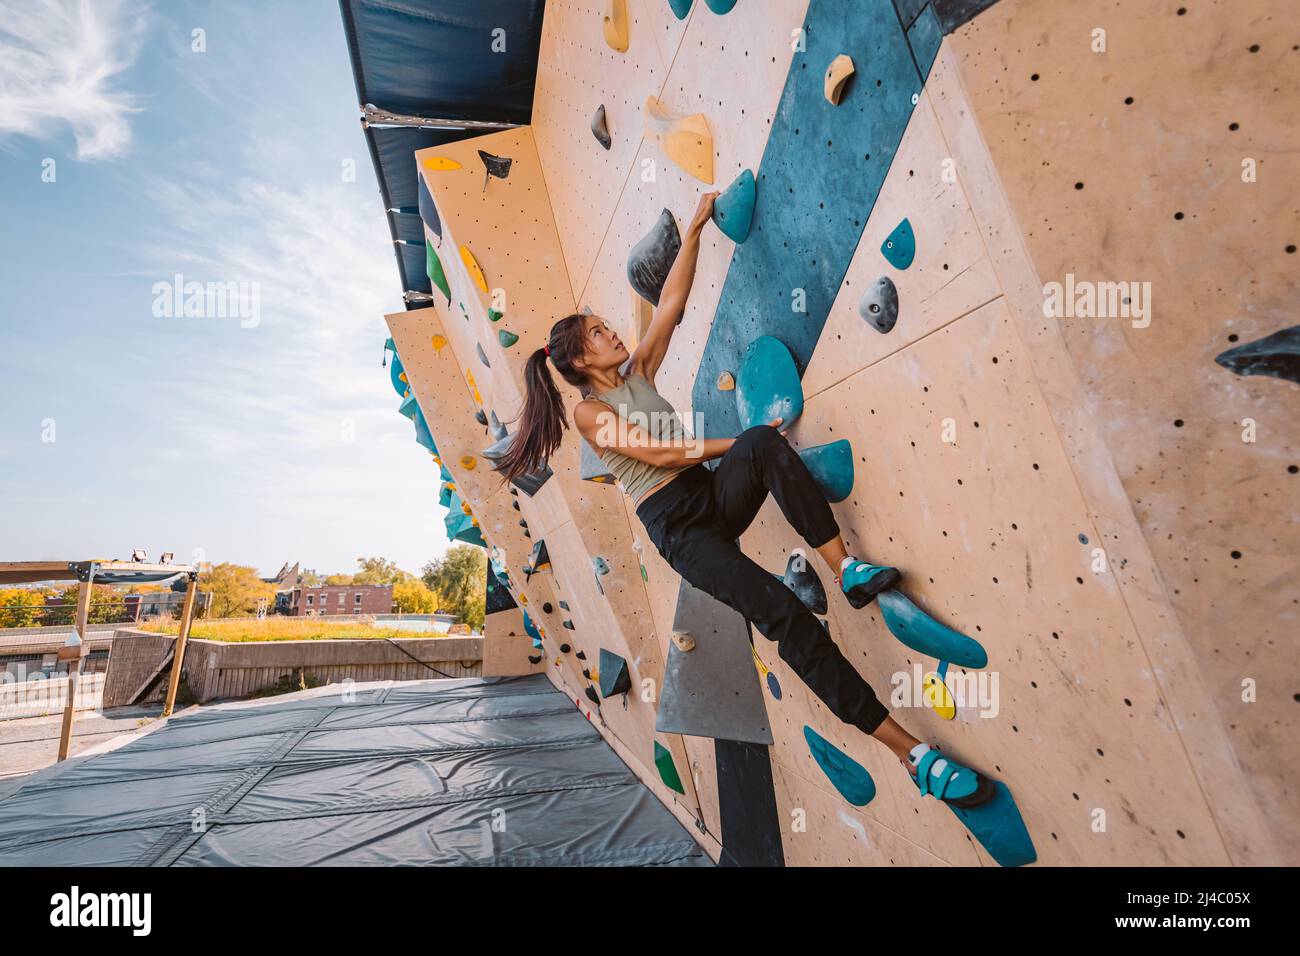 Mujer trepadora asiática subiendo por la pared de rocas al aire libre en el gimnasio. Actividades deportivas divertidas y activas en el exterior Foto de stock